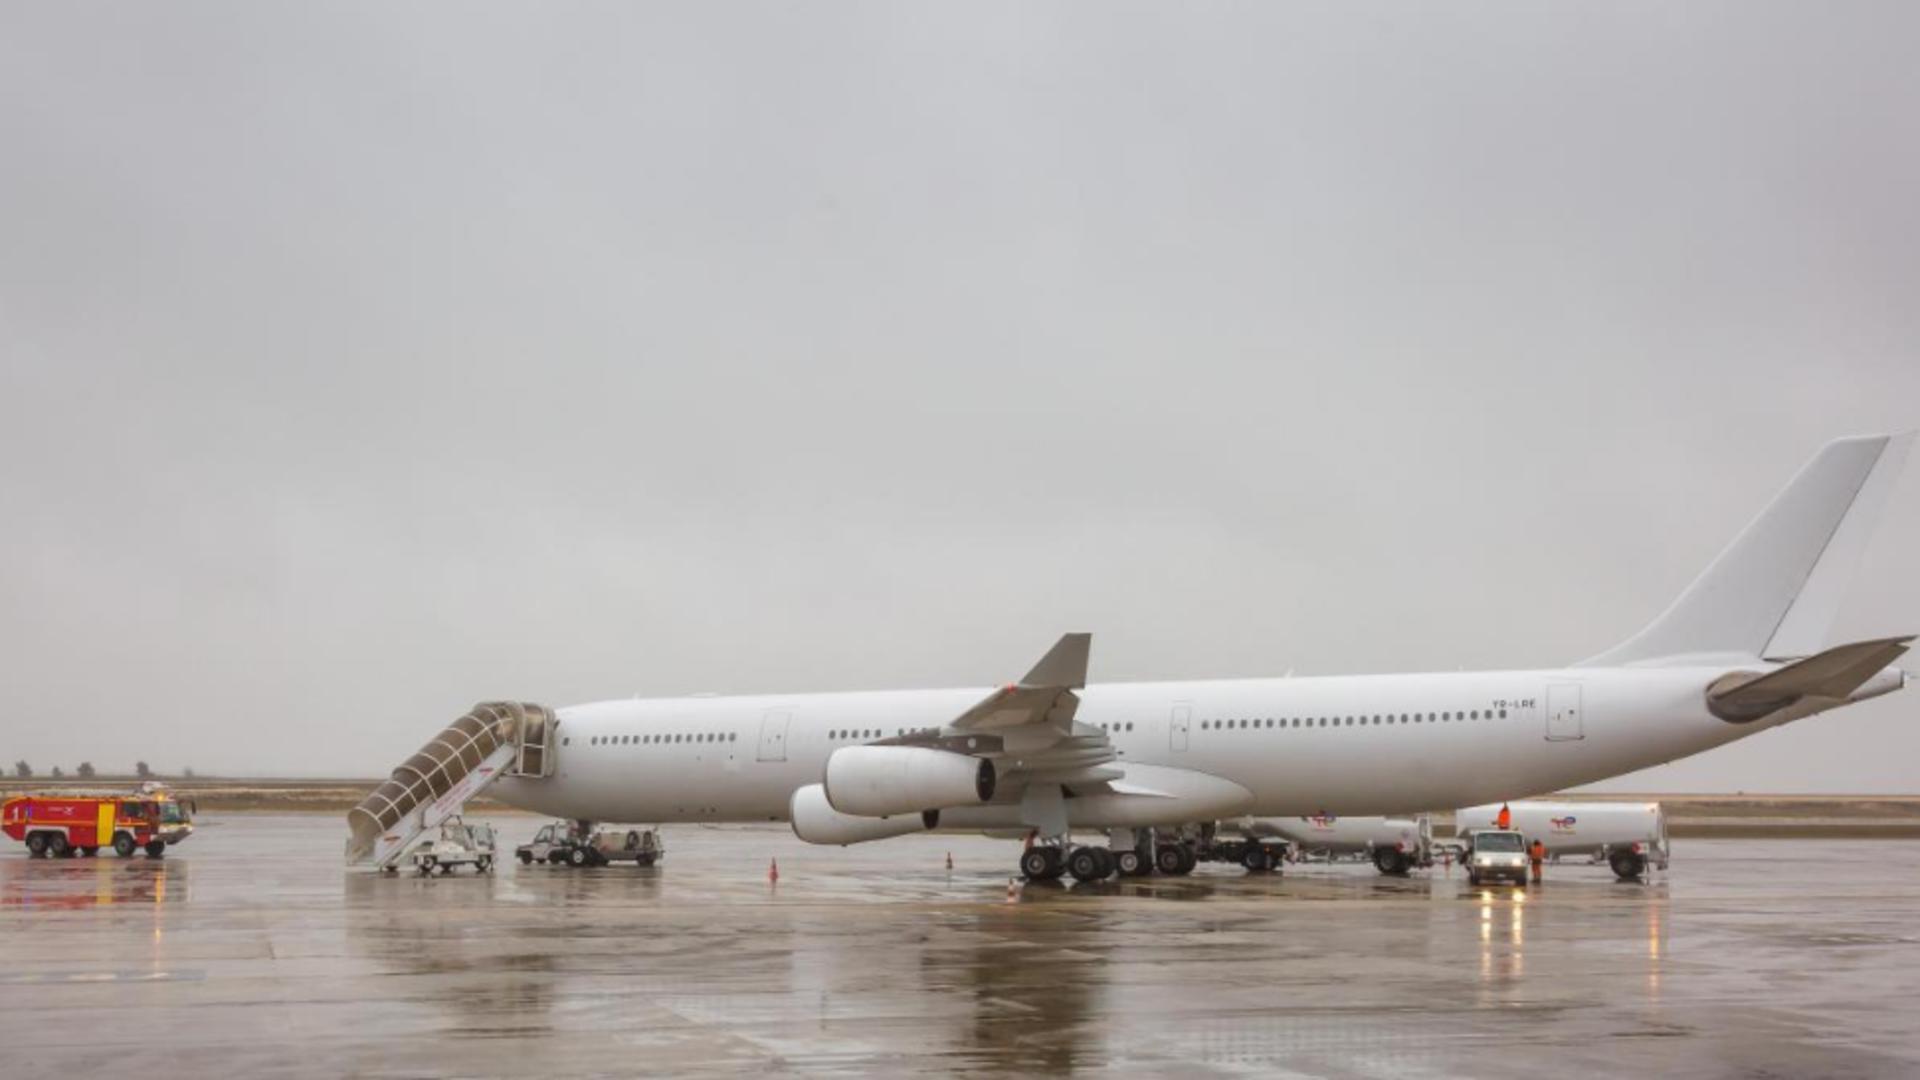 Un Airbus al unei companii românești, blocat pe aeroport în Franța. Suspiciune de trafic de persoane spre SUA sau Canada